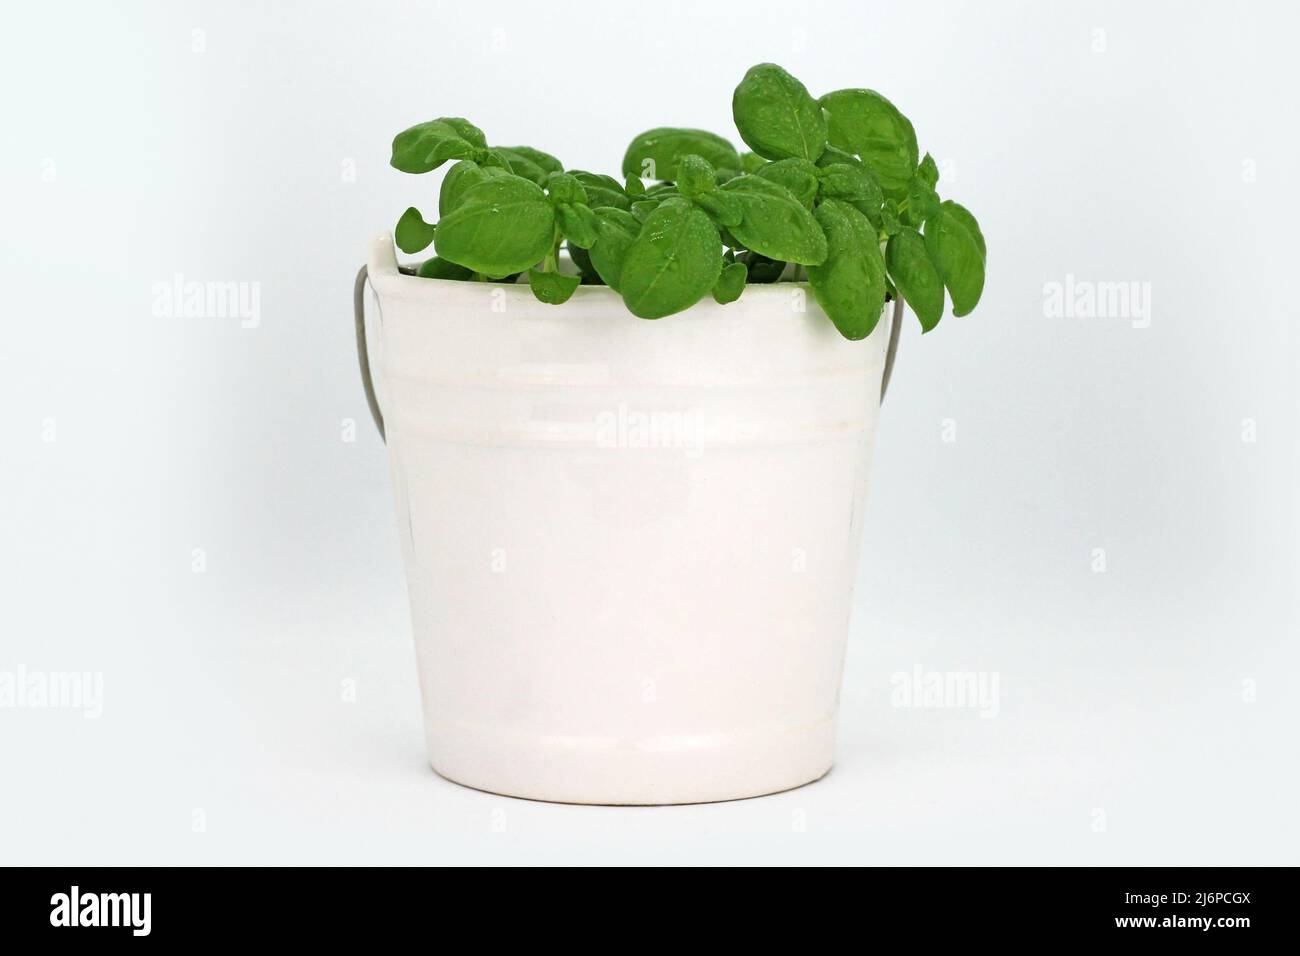 Pianta di basilico in vaso di ceramica su sfondo bianco. Foto studio. Foto Stock